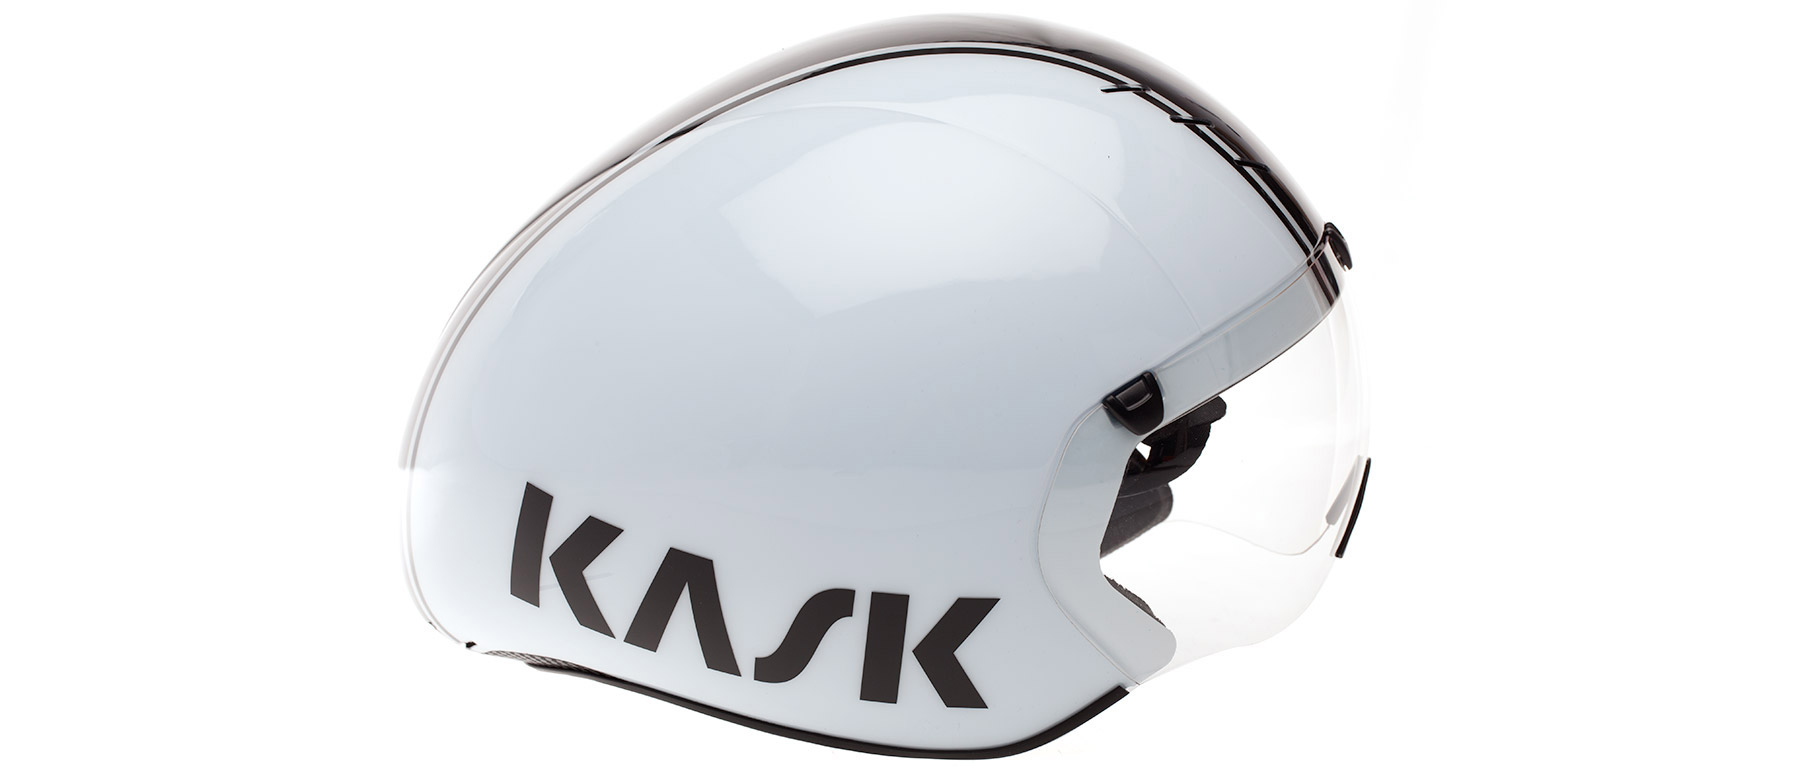 KASK Kask Bambino Helmet Medium 55-58cm Includes clear visor White 